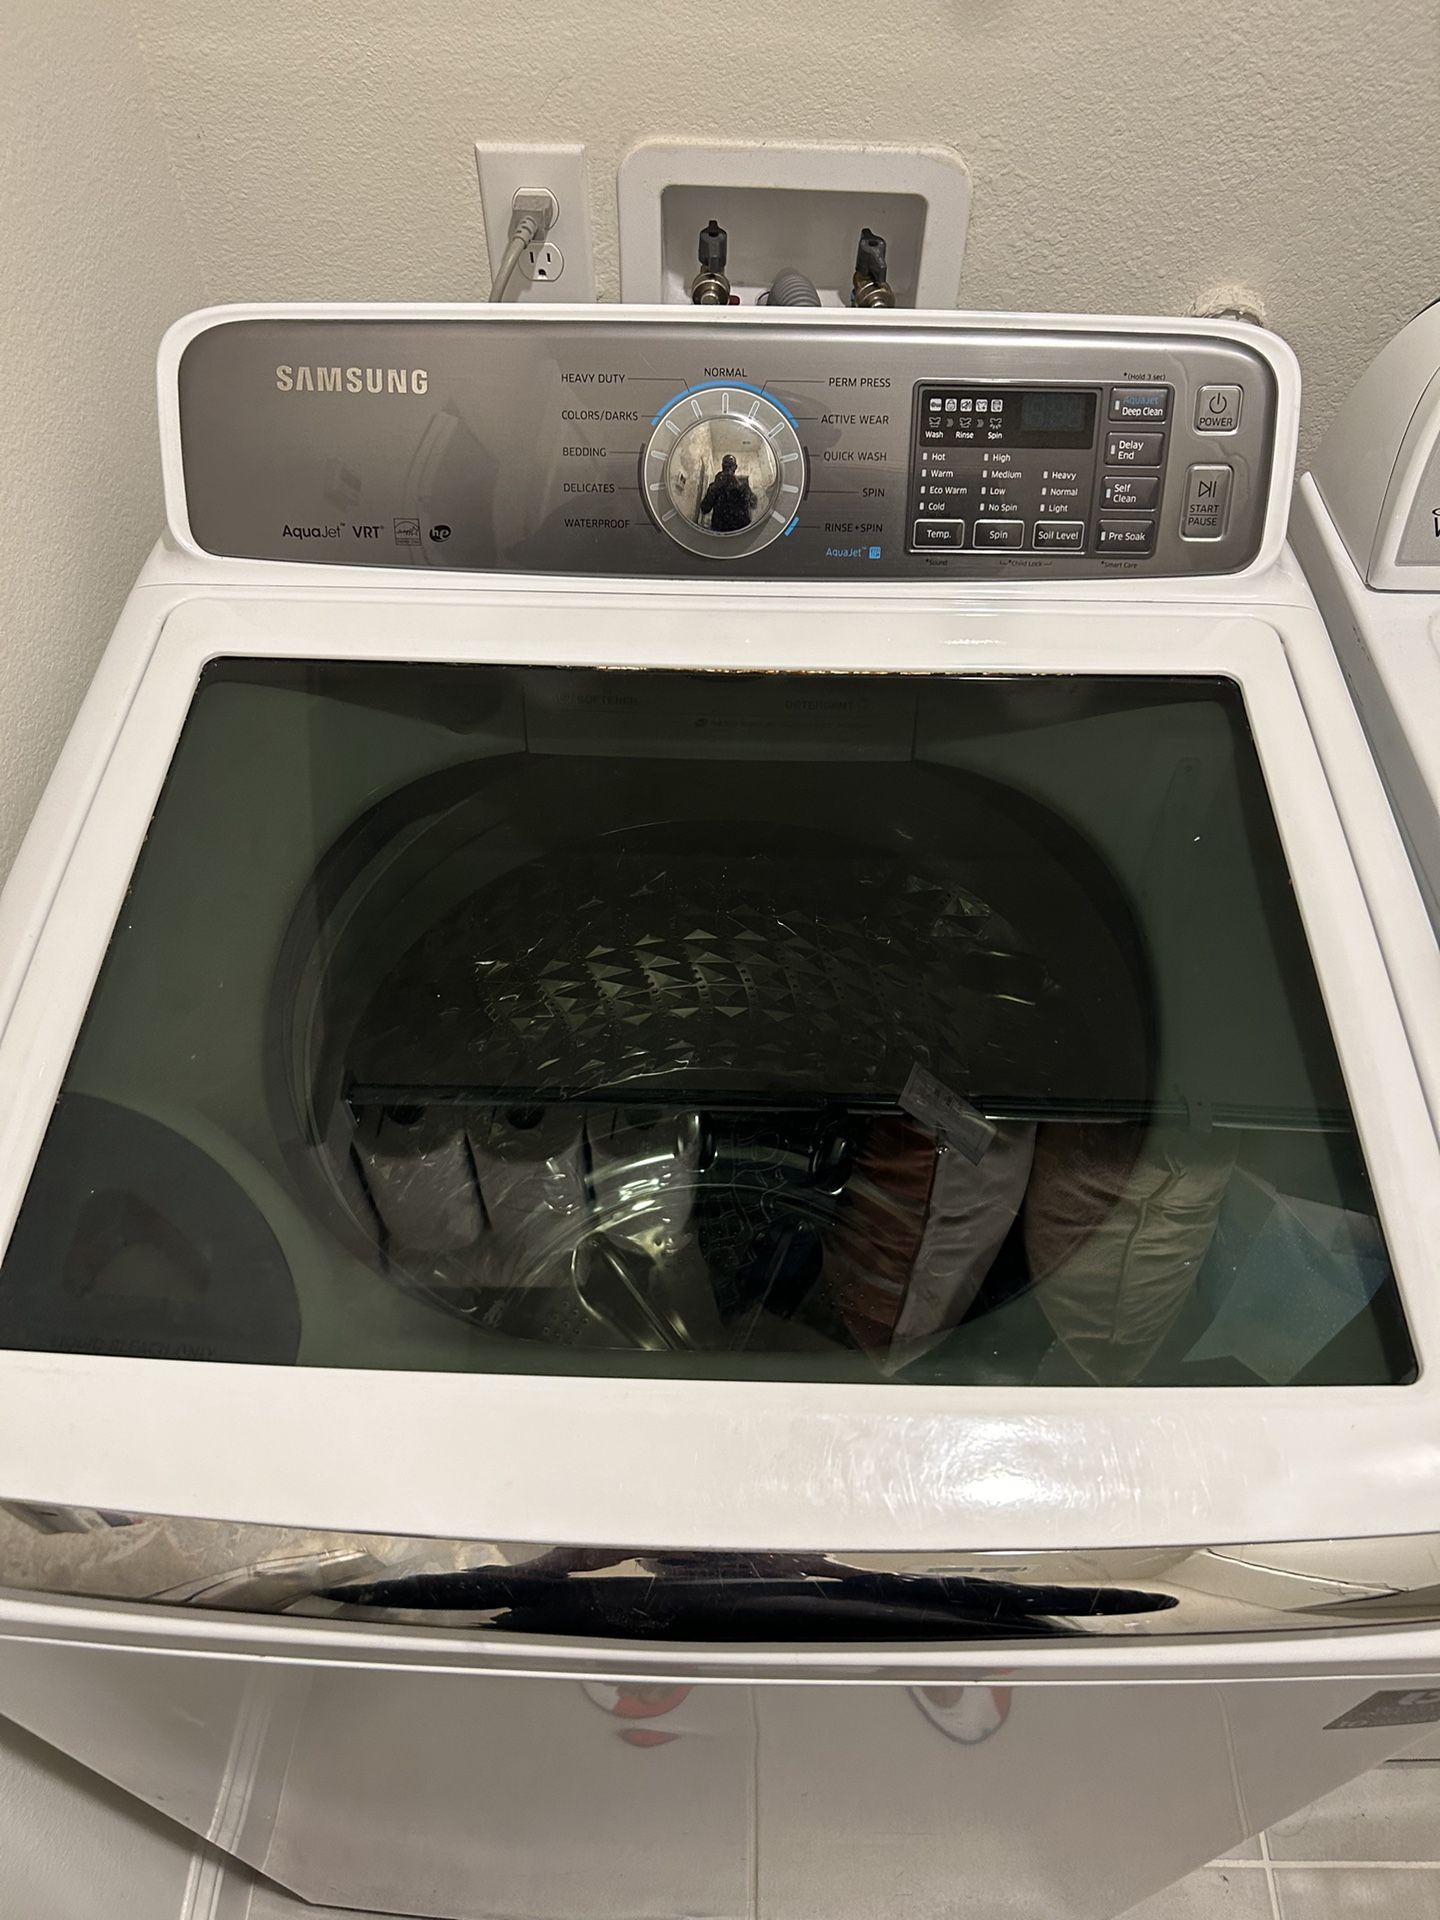 Samsung washer Dryer 